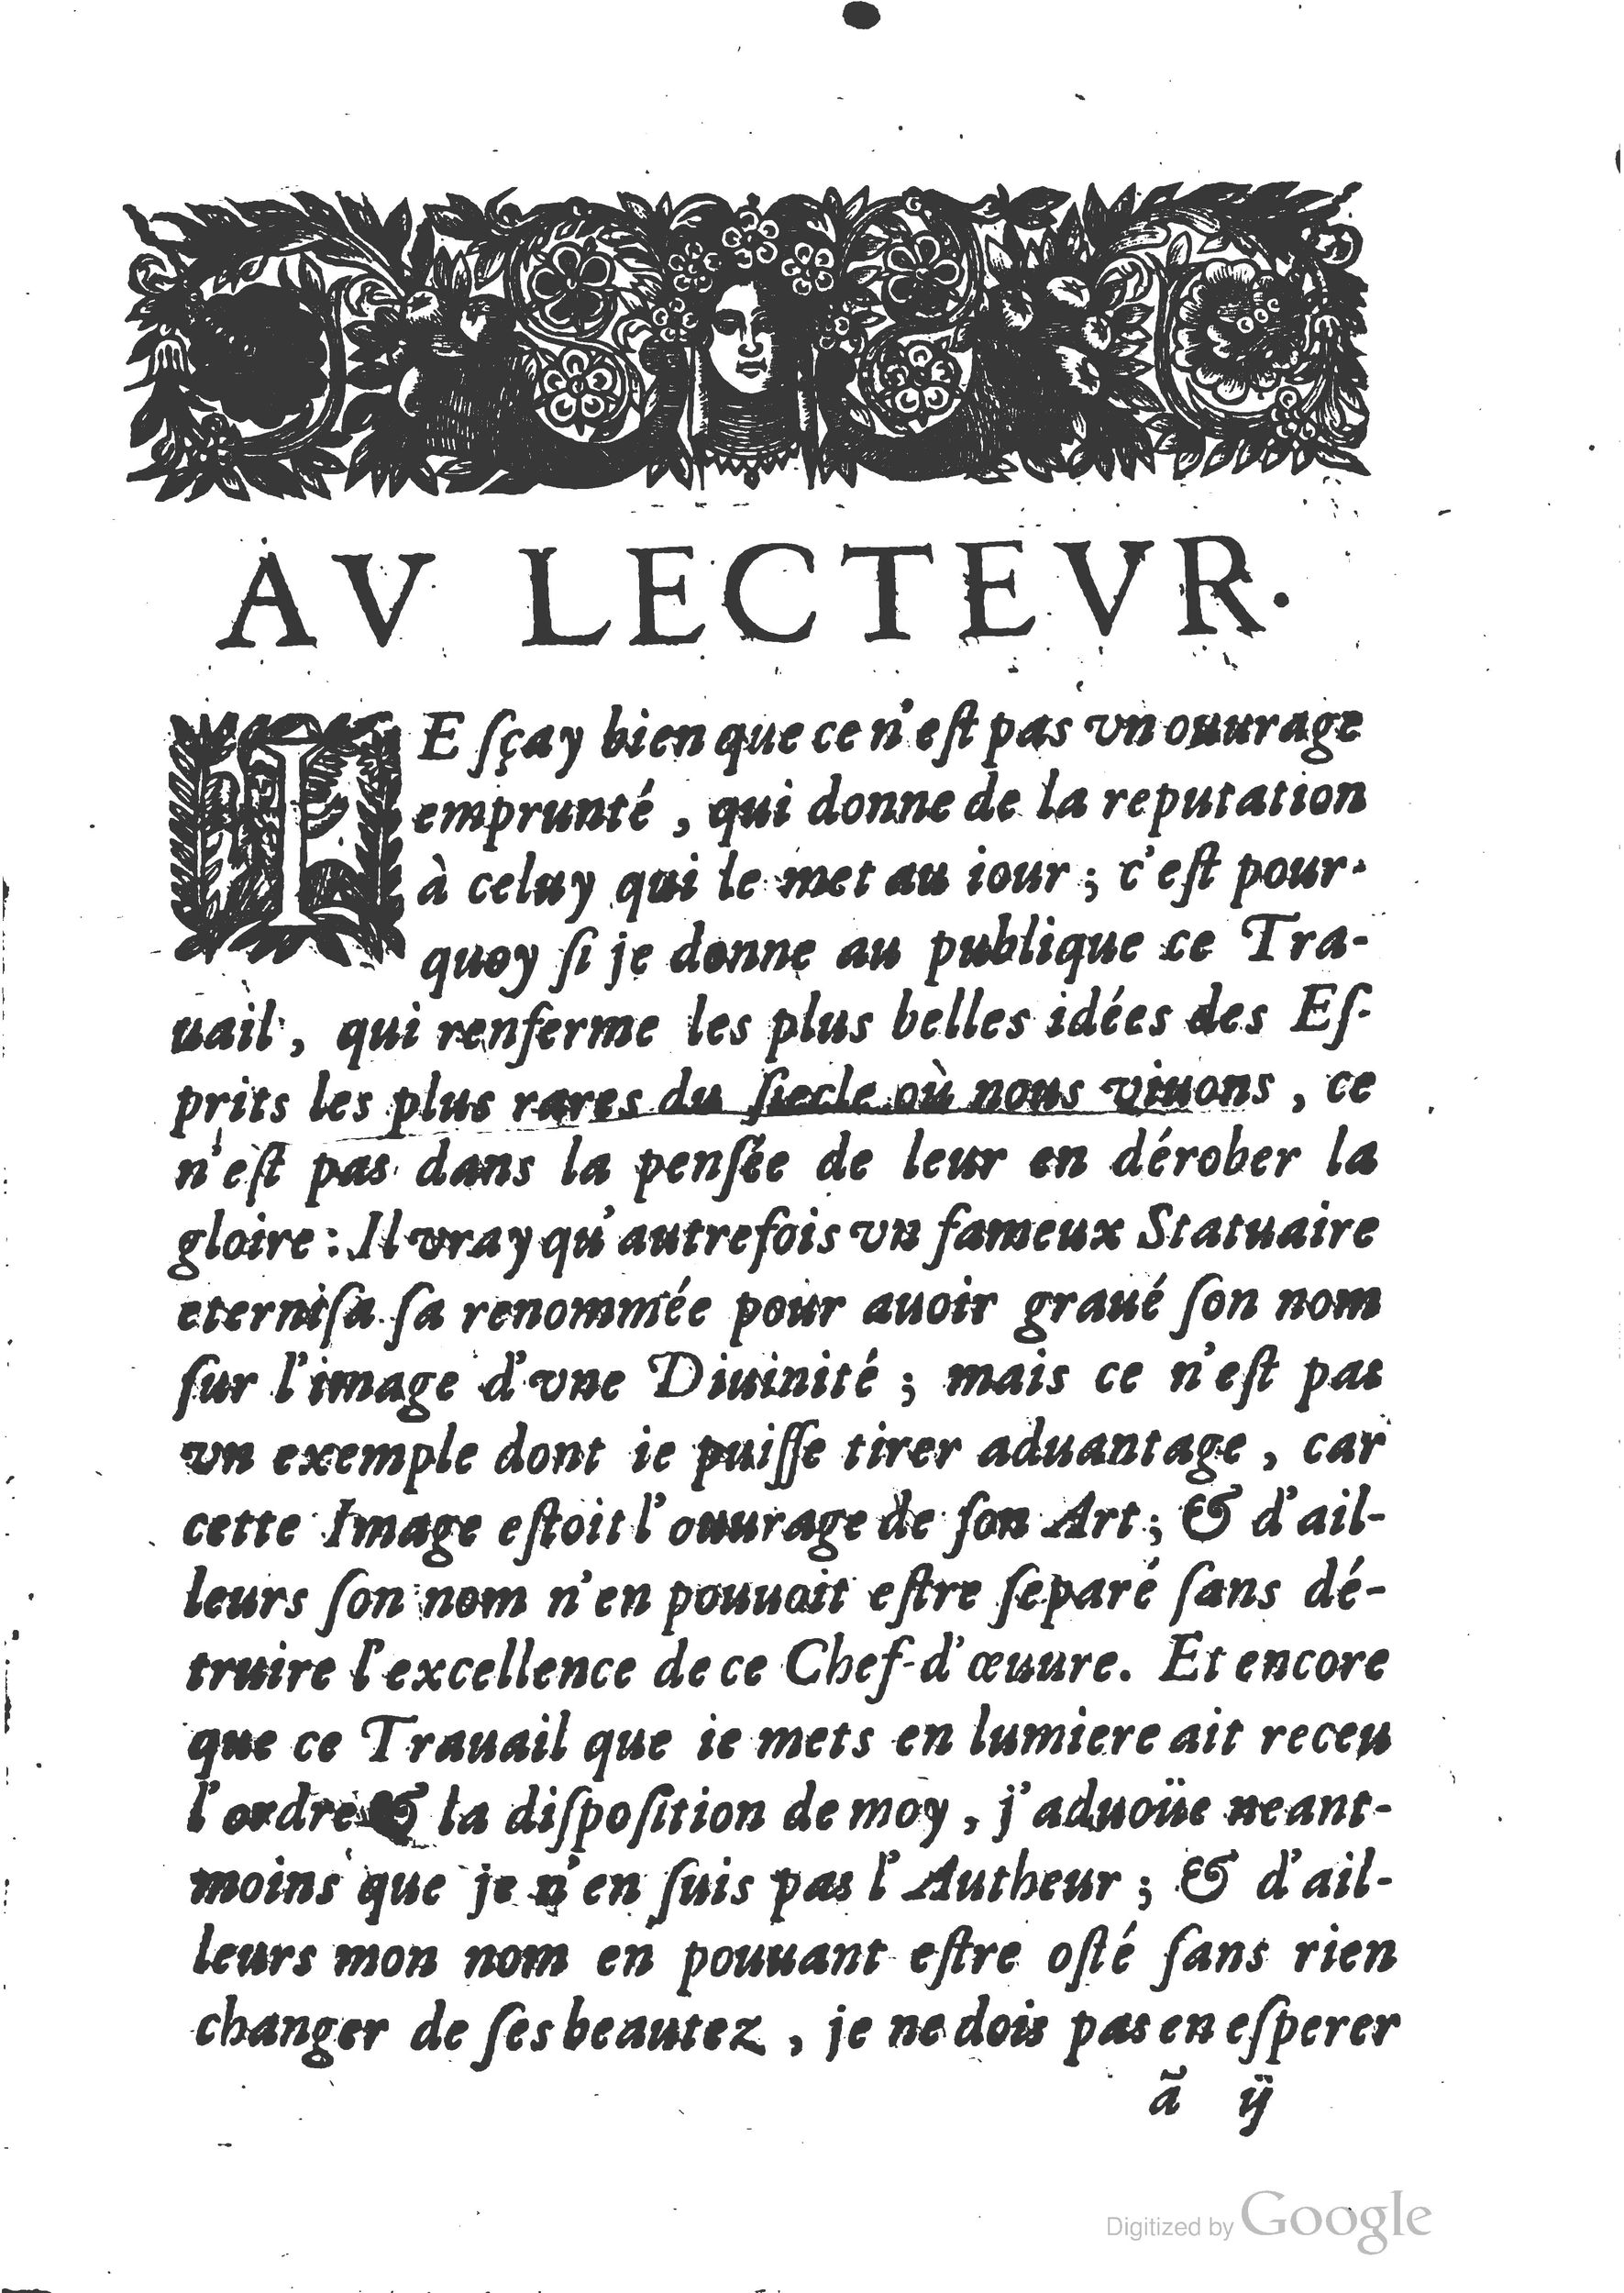 1654 Trésor des harangues, remontrances et oraisons funèbres Robin_BM Lyon_Page_008.jpg